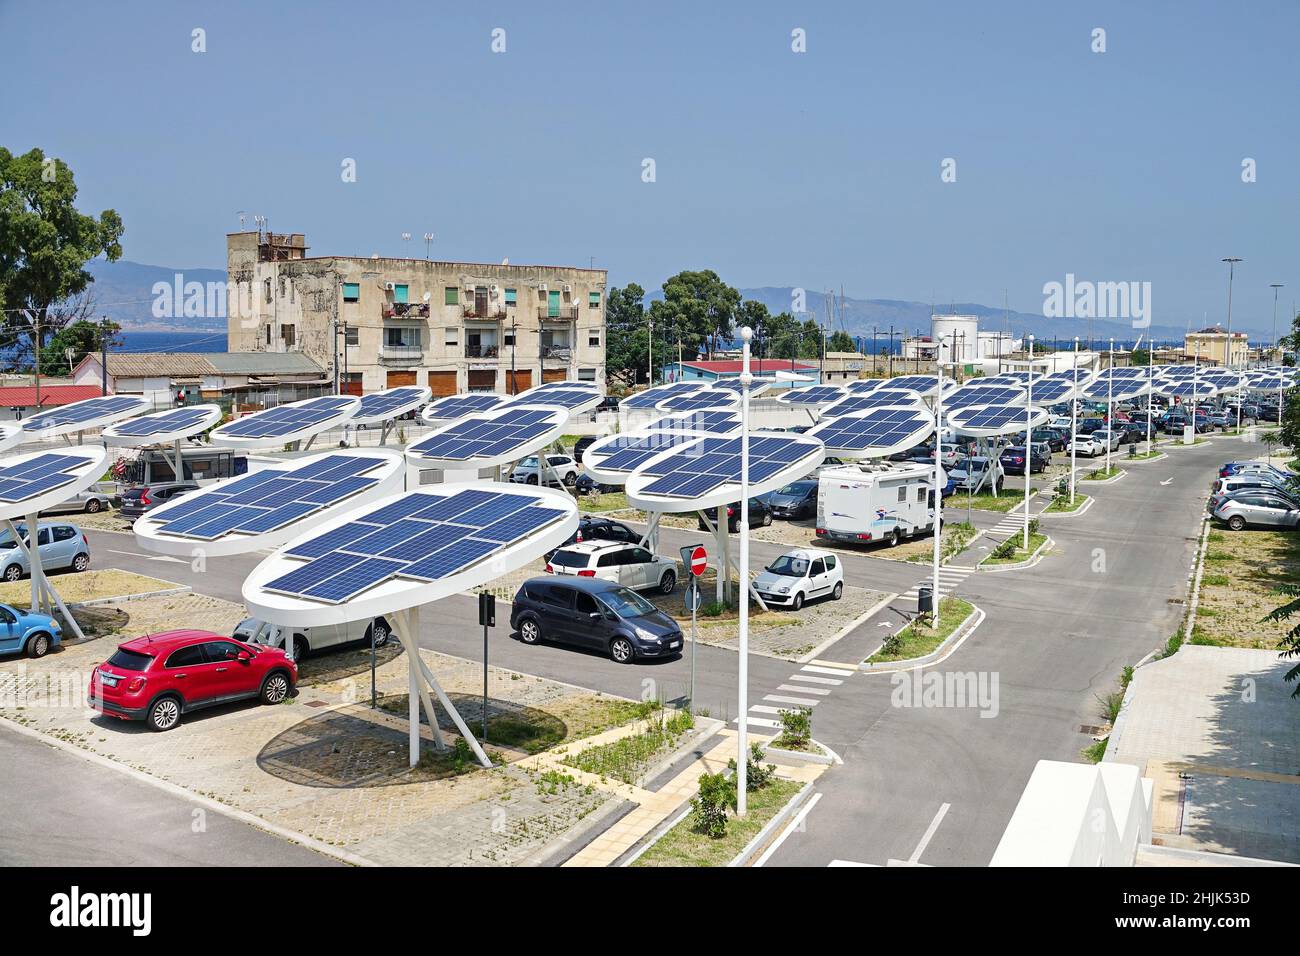 Pannelli solari in un parcheggio. Le aziende stanno installando fonti di energia rinnovabile per ridurre la loro impronta di carbonio. Reggio Calabria, Italia - Luglio 2021 Foto Stock